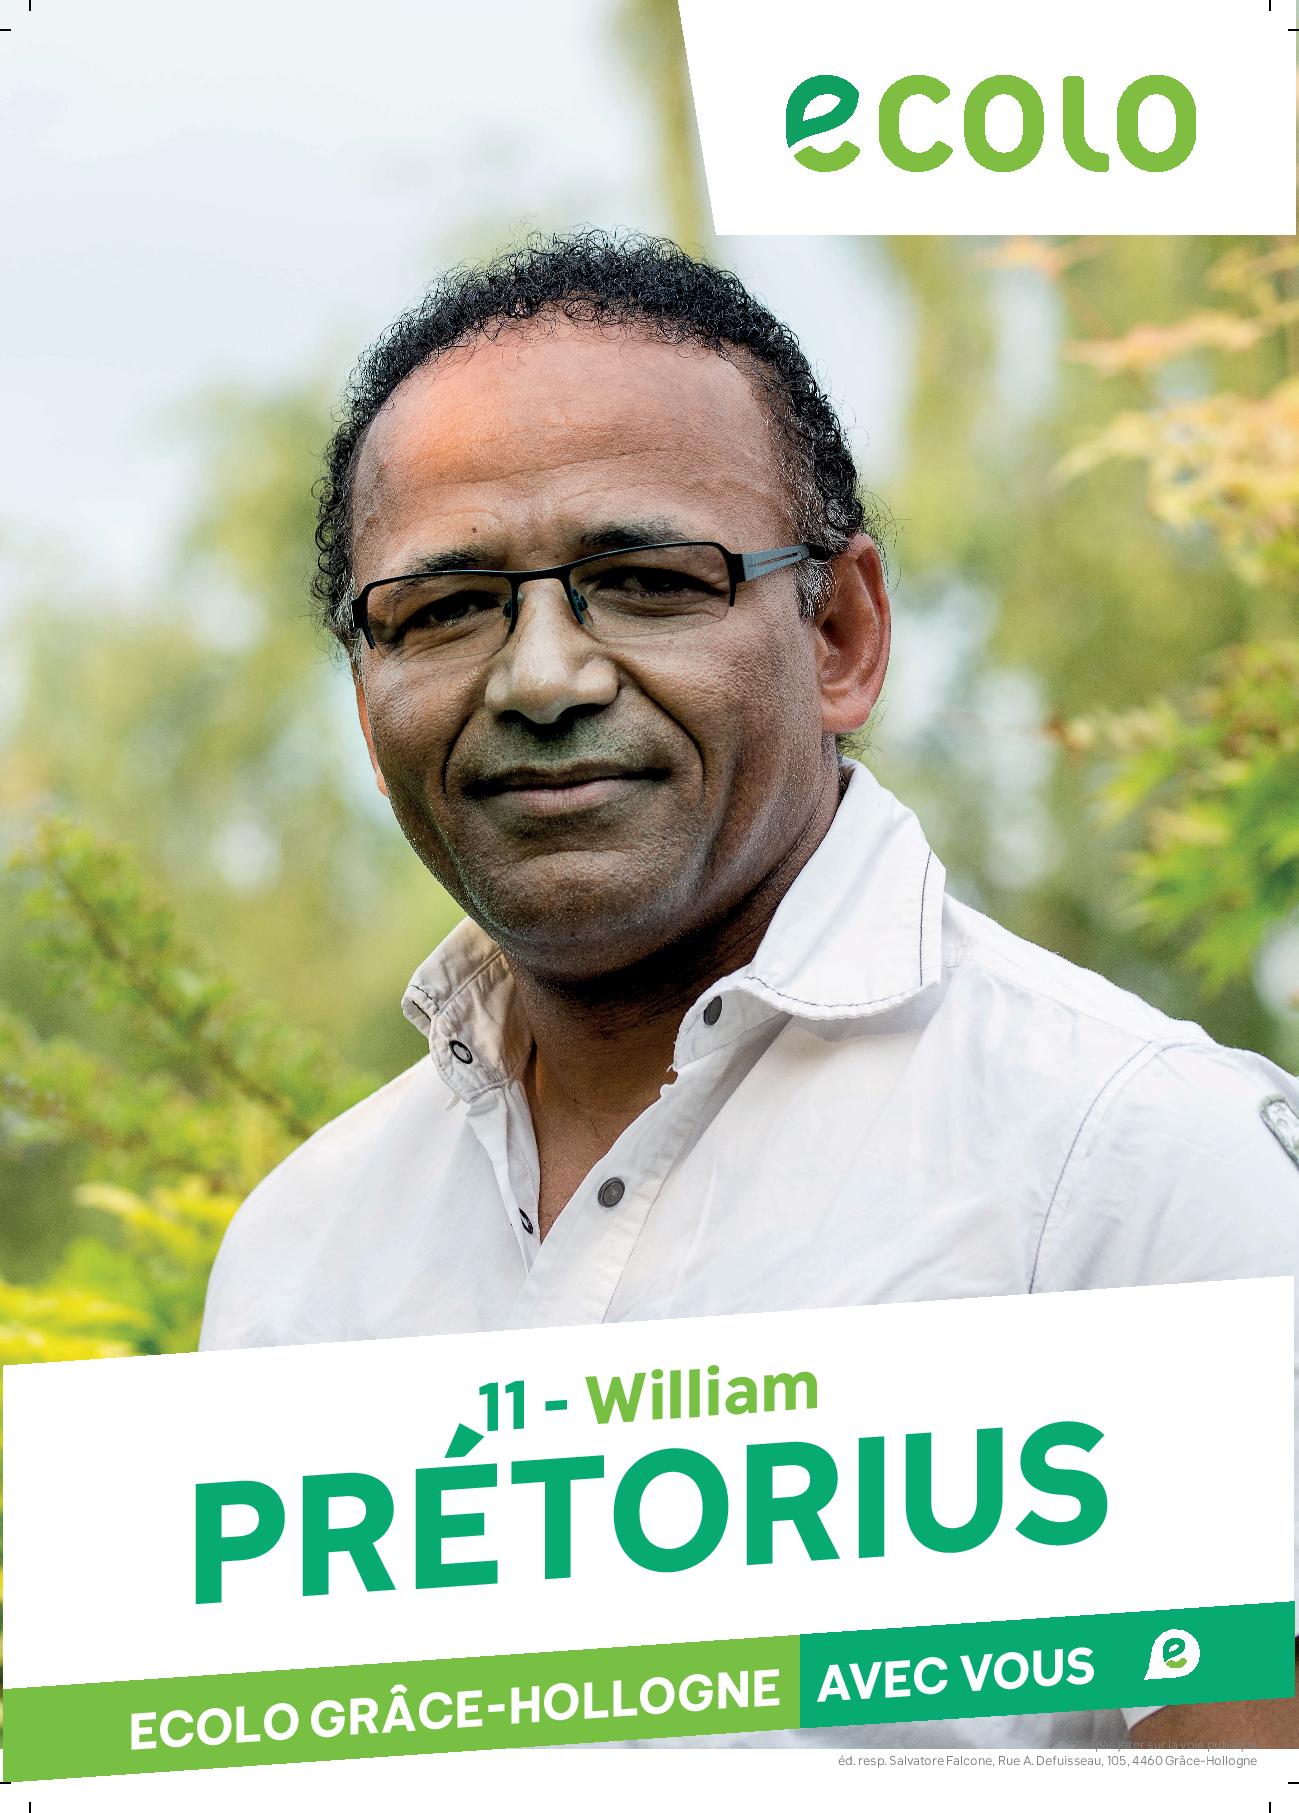 William PRETORIUS